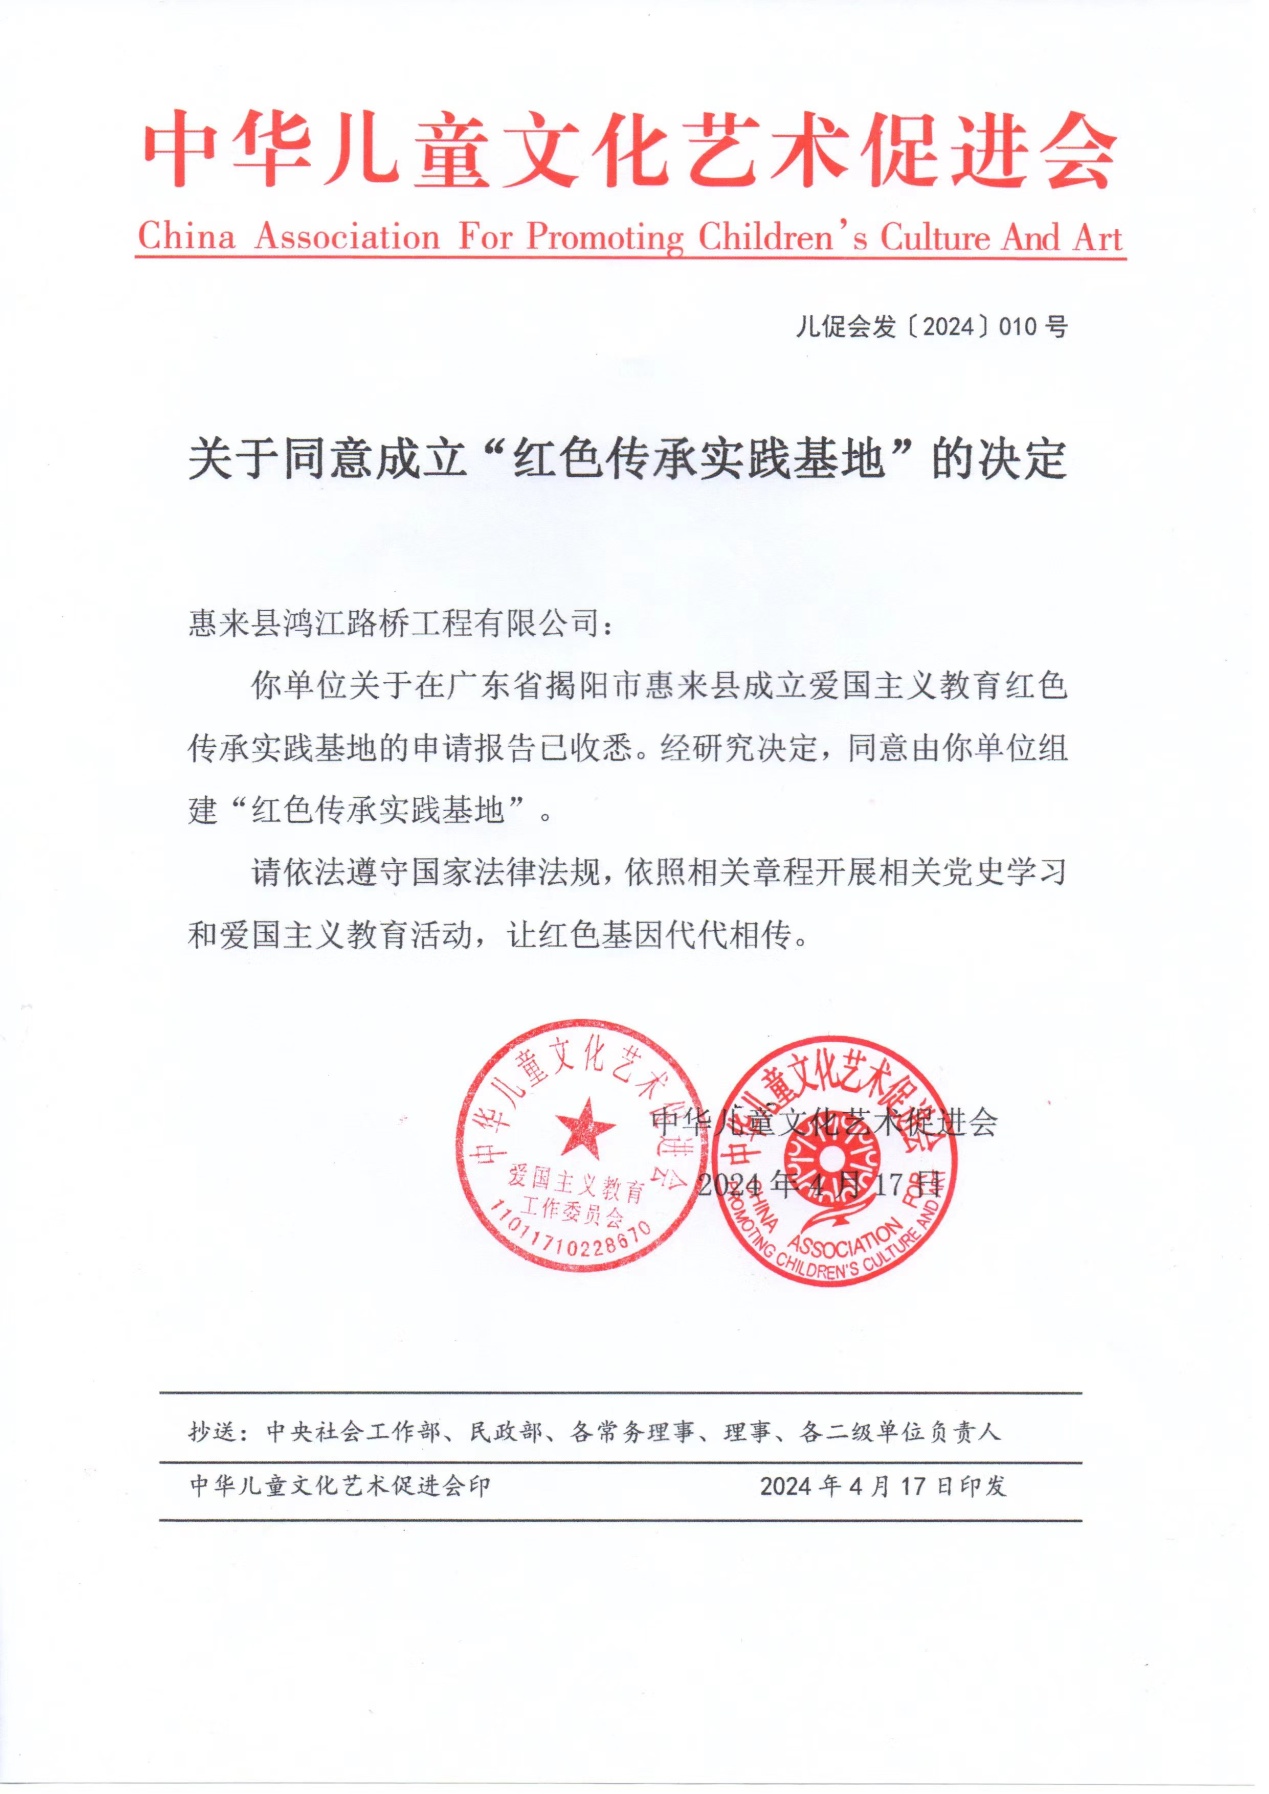 广东揭阳爱国主义教育红色传承实践基地于日前批准成立